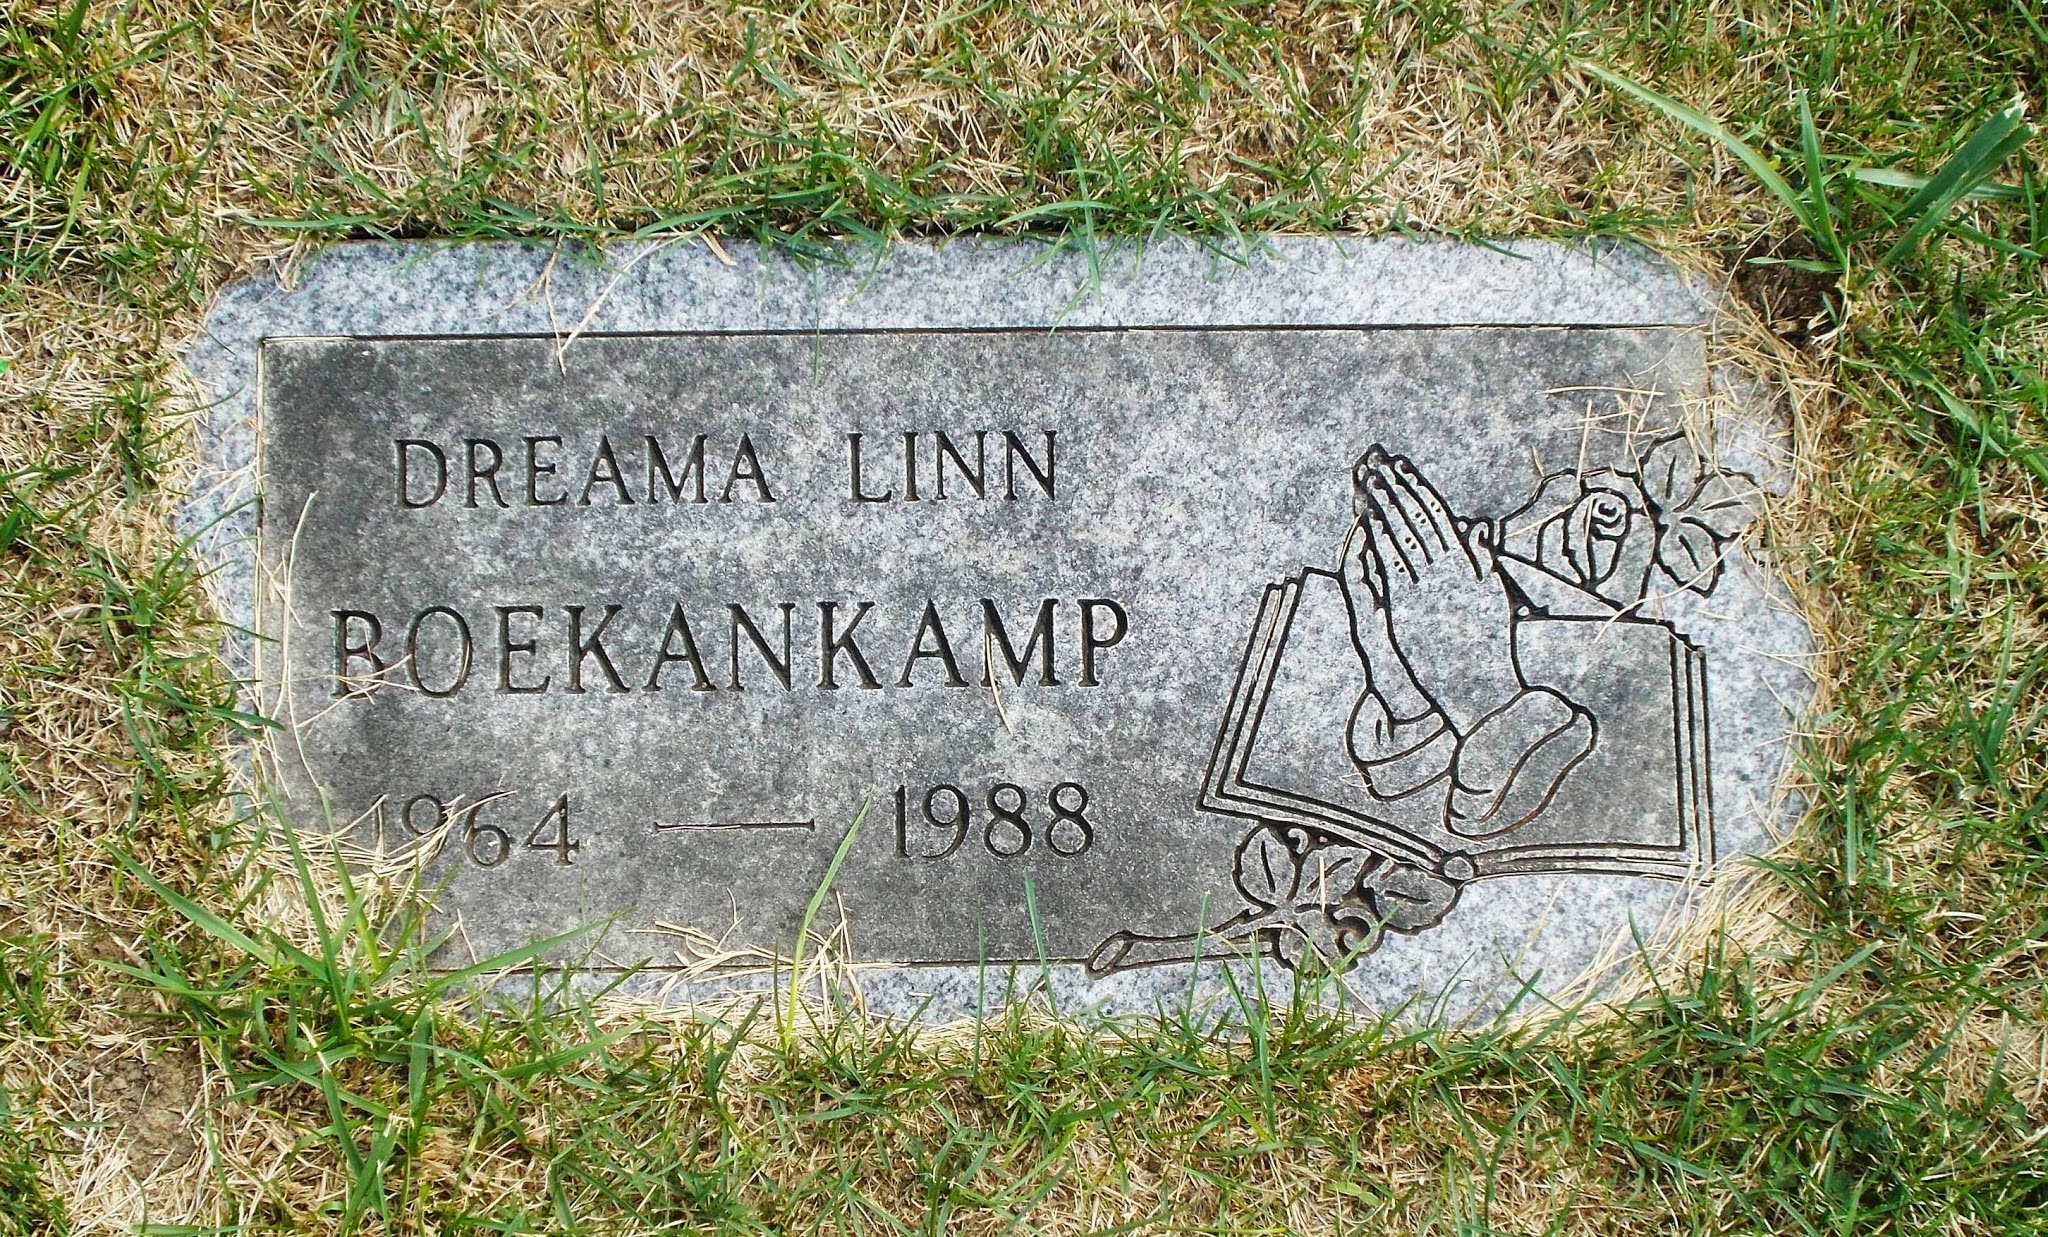 Dreama Linn Boekankamp